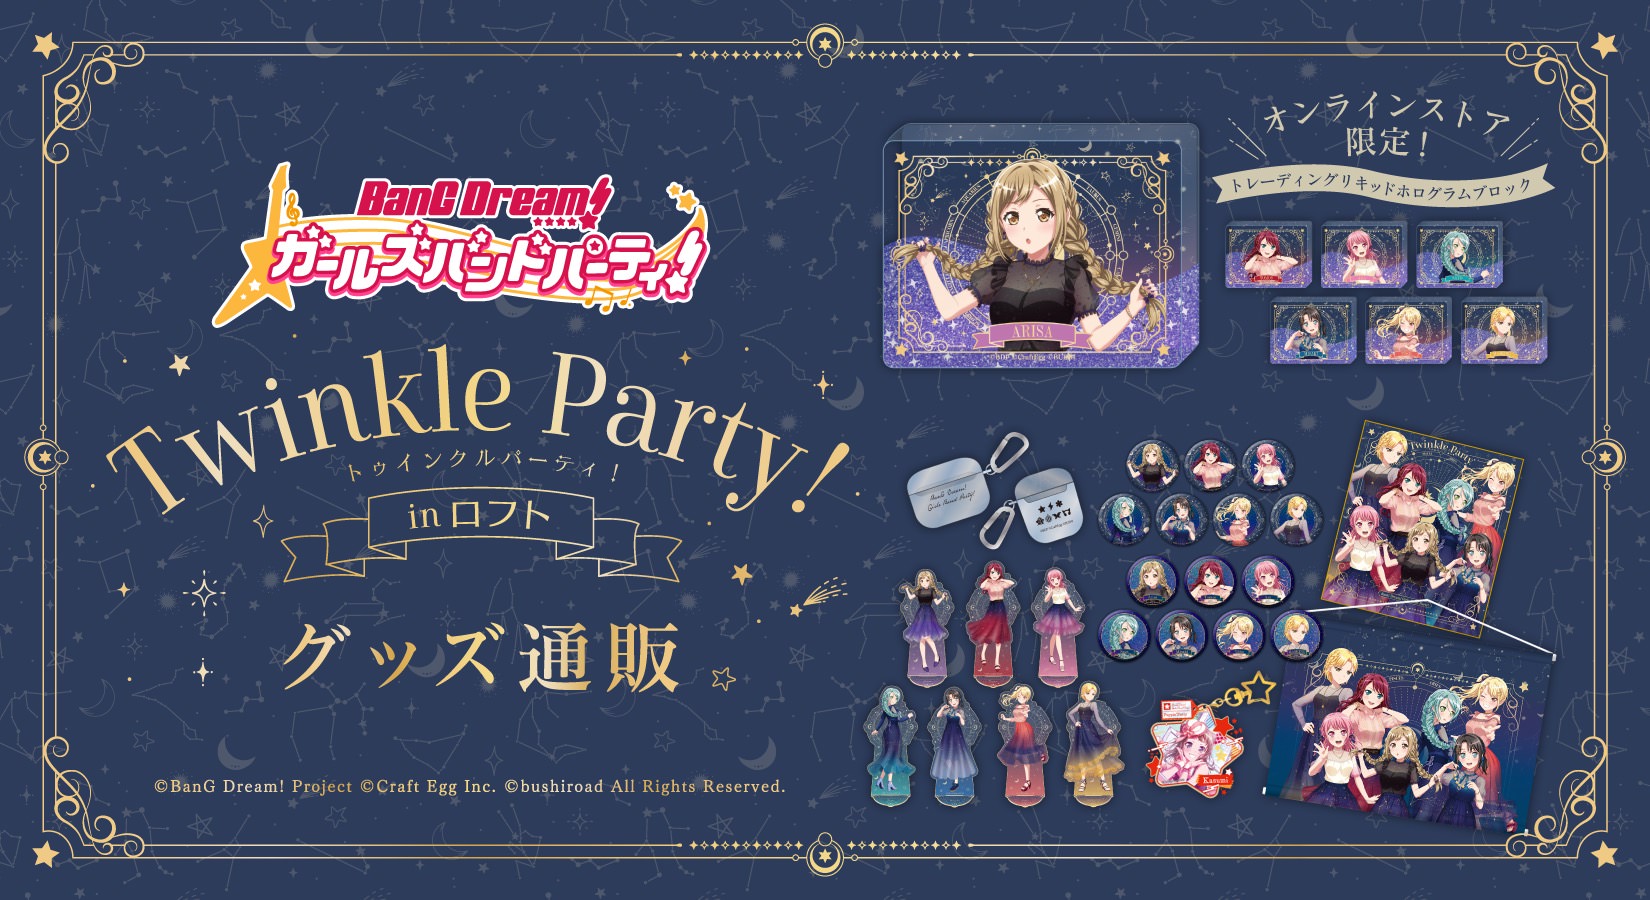 バンドリ ガルパ Twinkle Party! ストア in 渋谷ロフト 11月1日より開催!